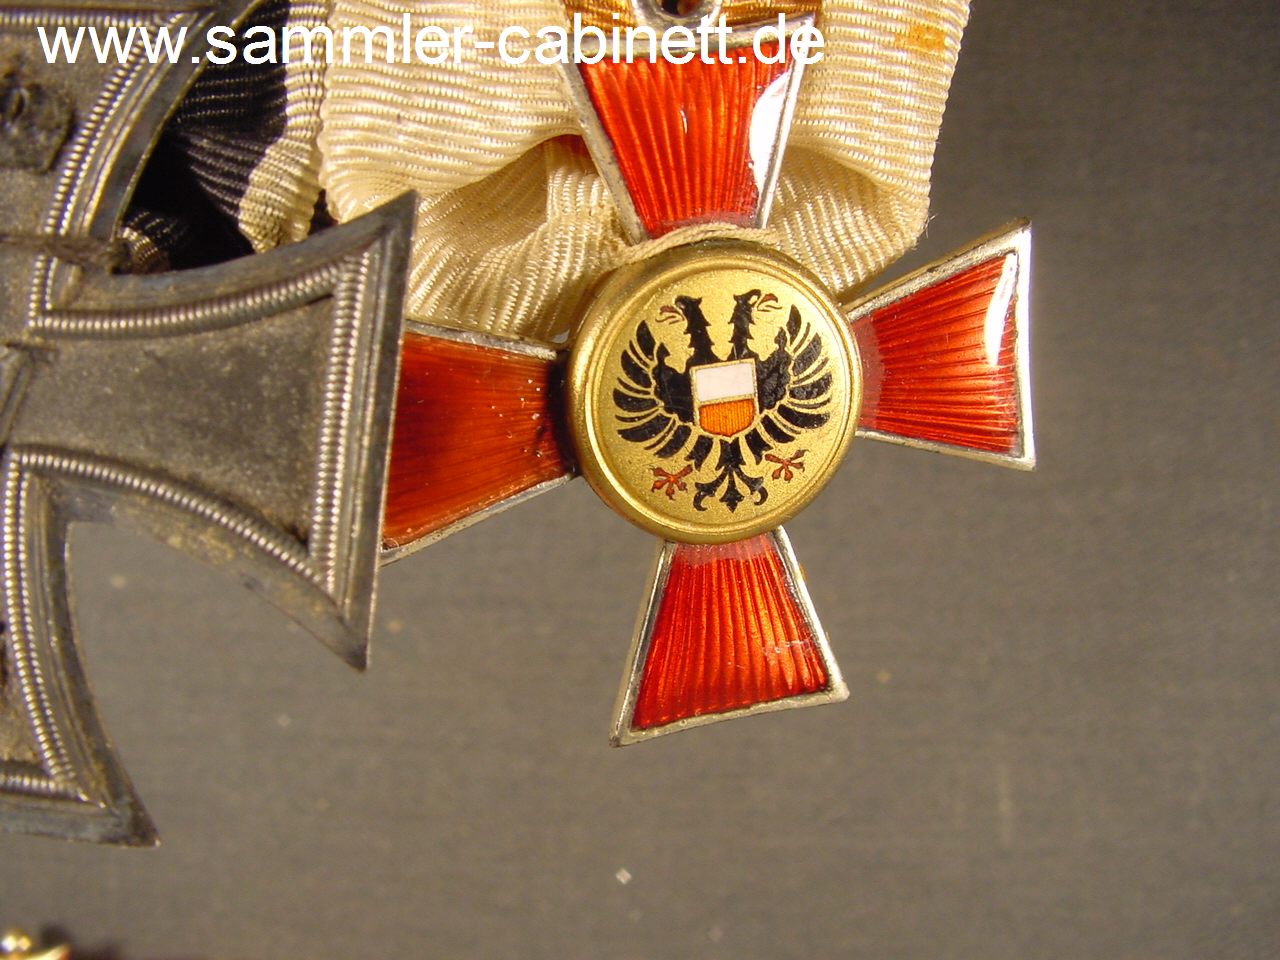 Spange mit 2 Dekorationen - Preussen - EK 2 - 1914 - und...